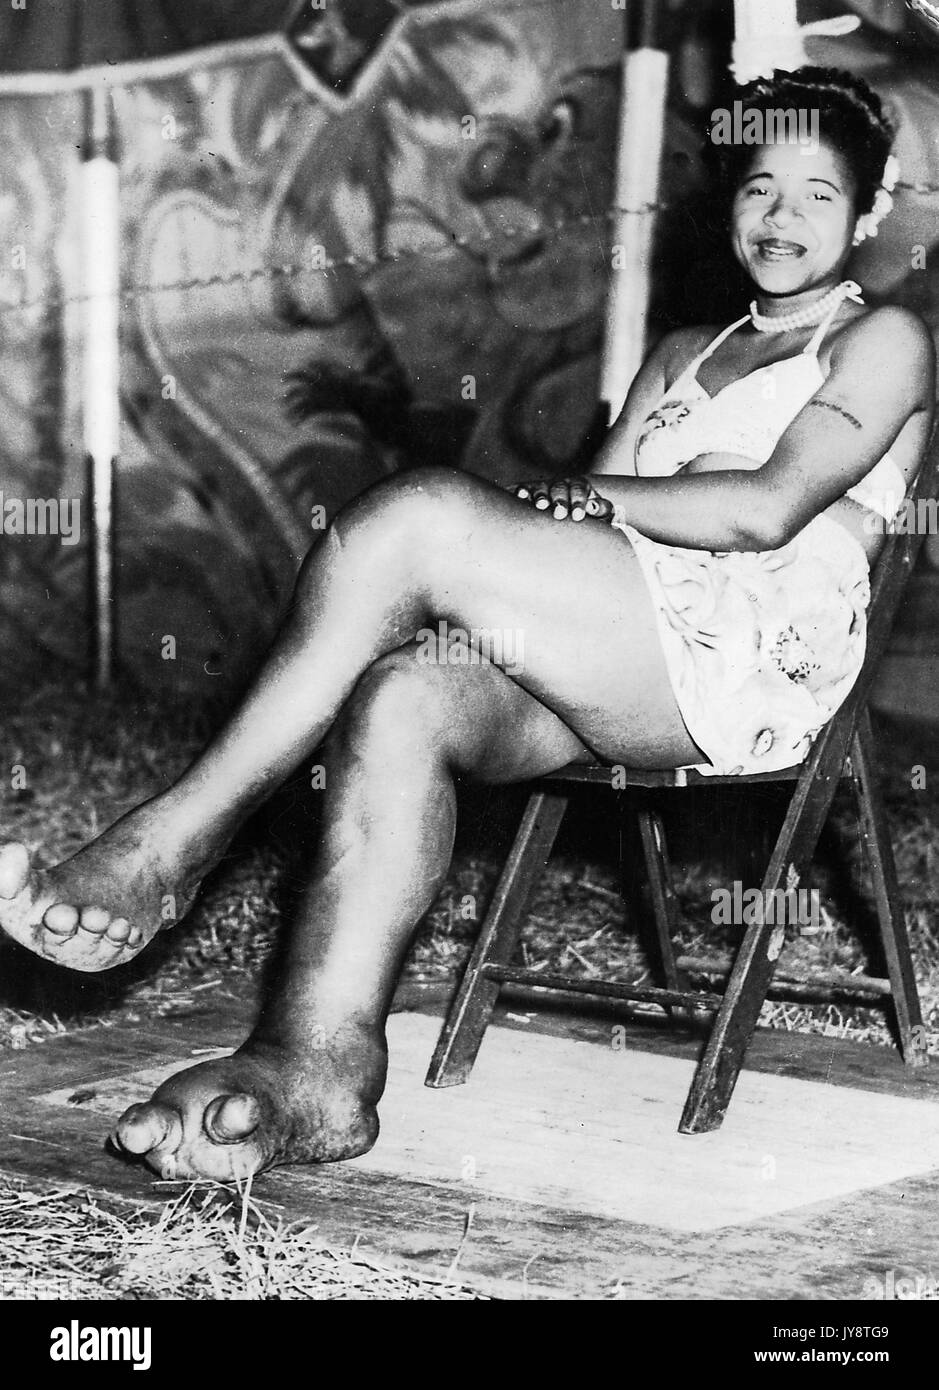 African American circus sideshow artiste Sylvia portis, connu sous le nom de Sylvia l'éléphant girl, souriant et afficher ses pieds, qui sont déformées et présentent des signes de la maladie l'éléphantiasis, 1944. Banque D'Images